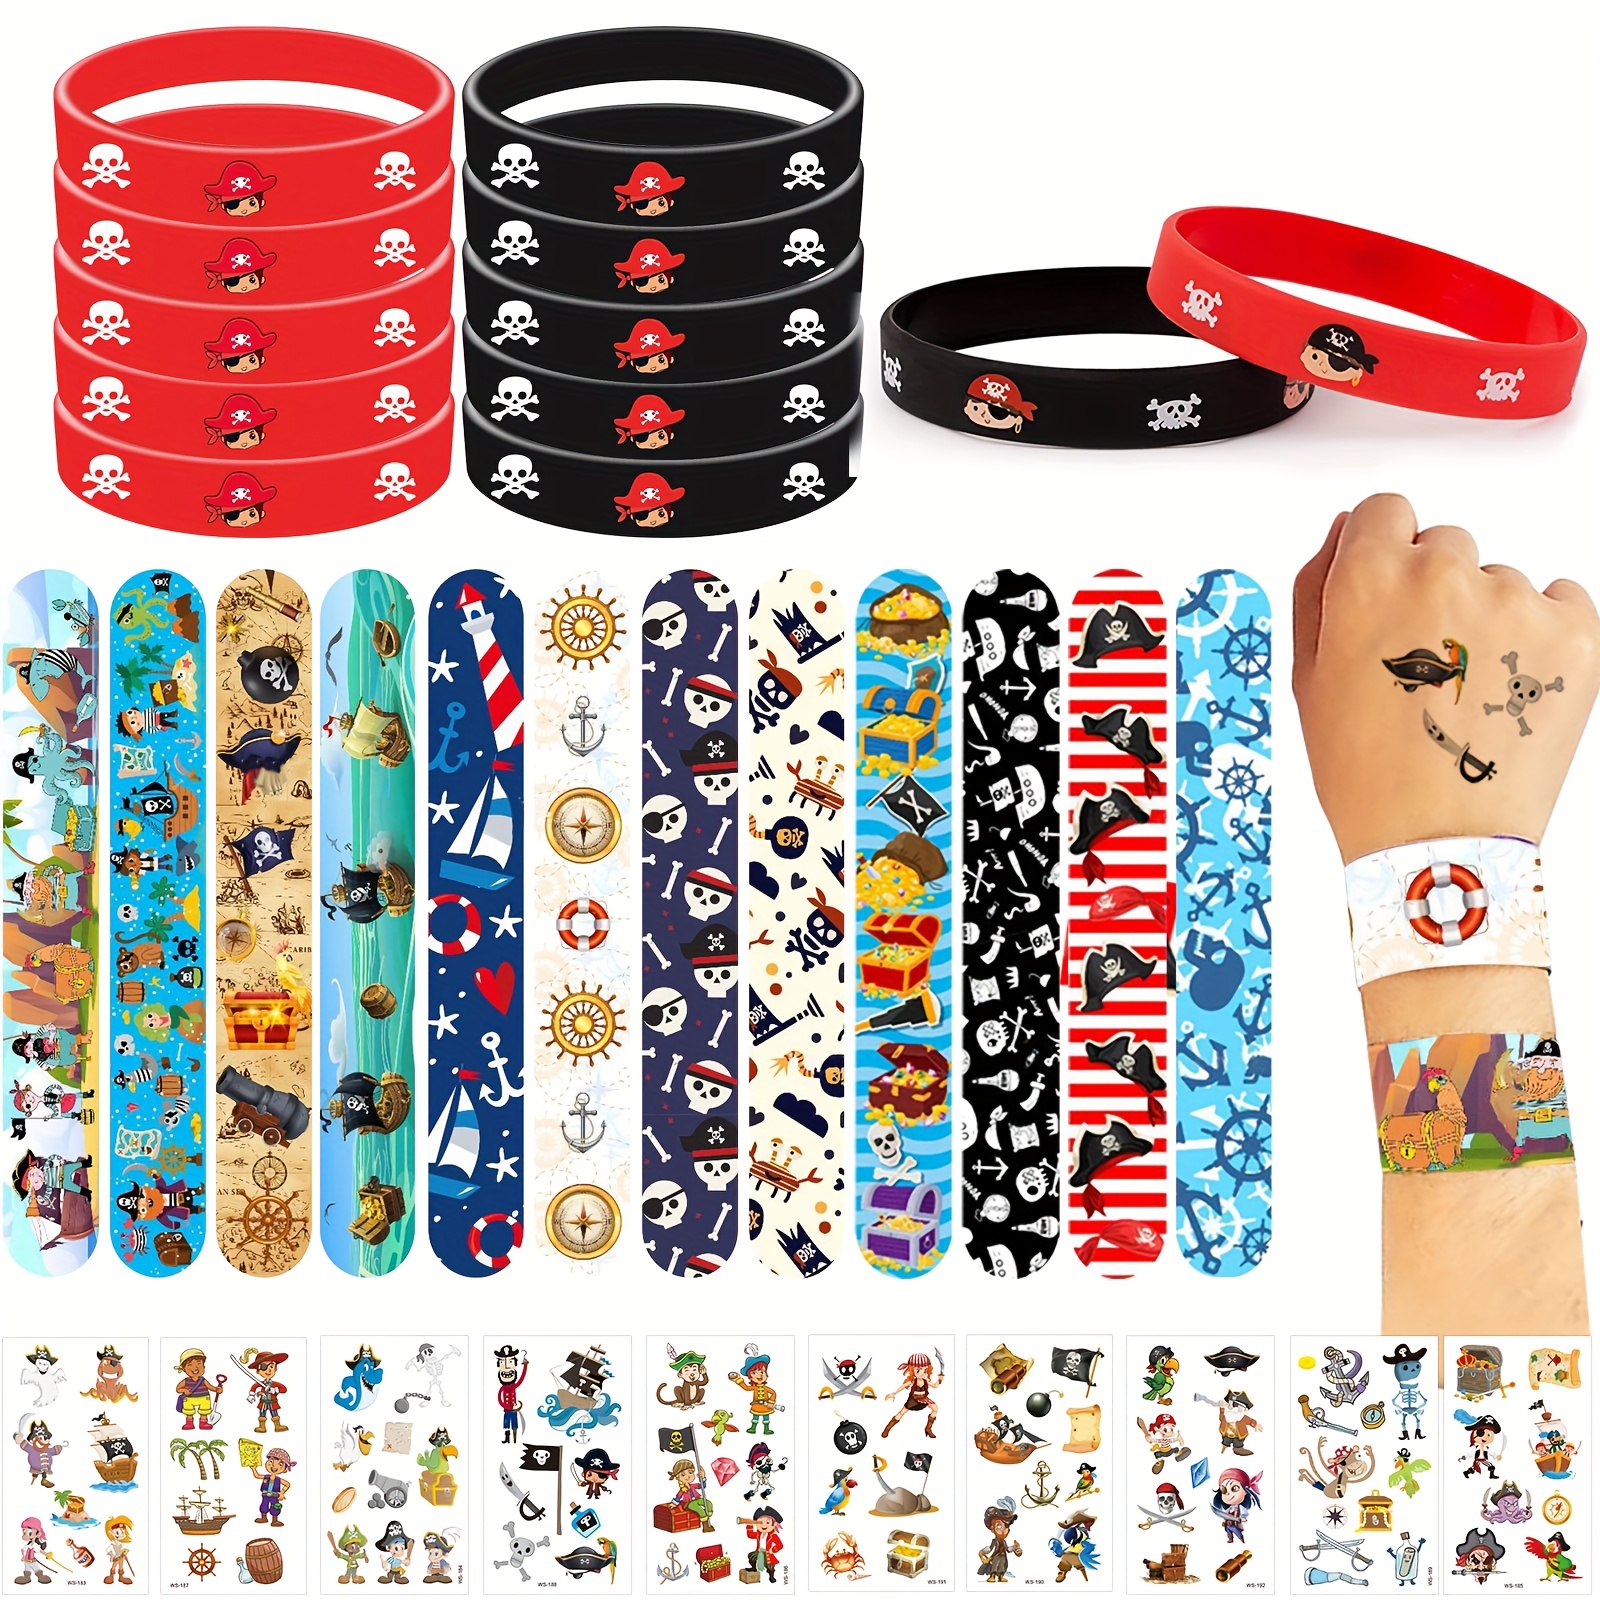 Piraten-Partygeschenke, Spielzeug, Schlagarmbänder Piraten,  Schnapparmband-Armband für Kinder, Piraten-Tattoos für Partygeschenke,  Taschenfüller